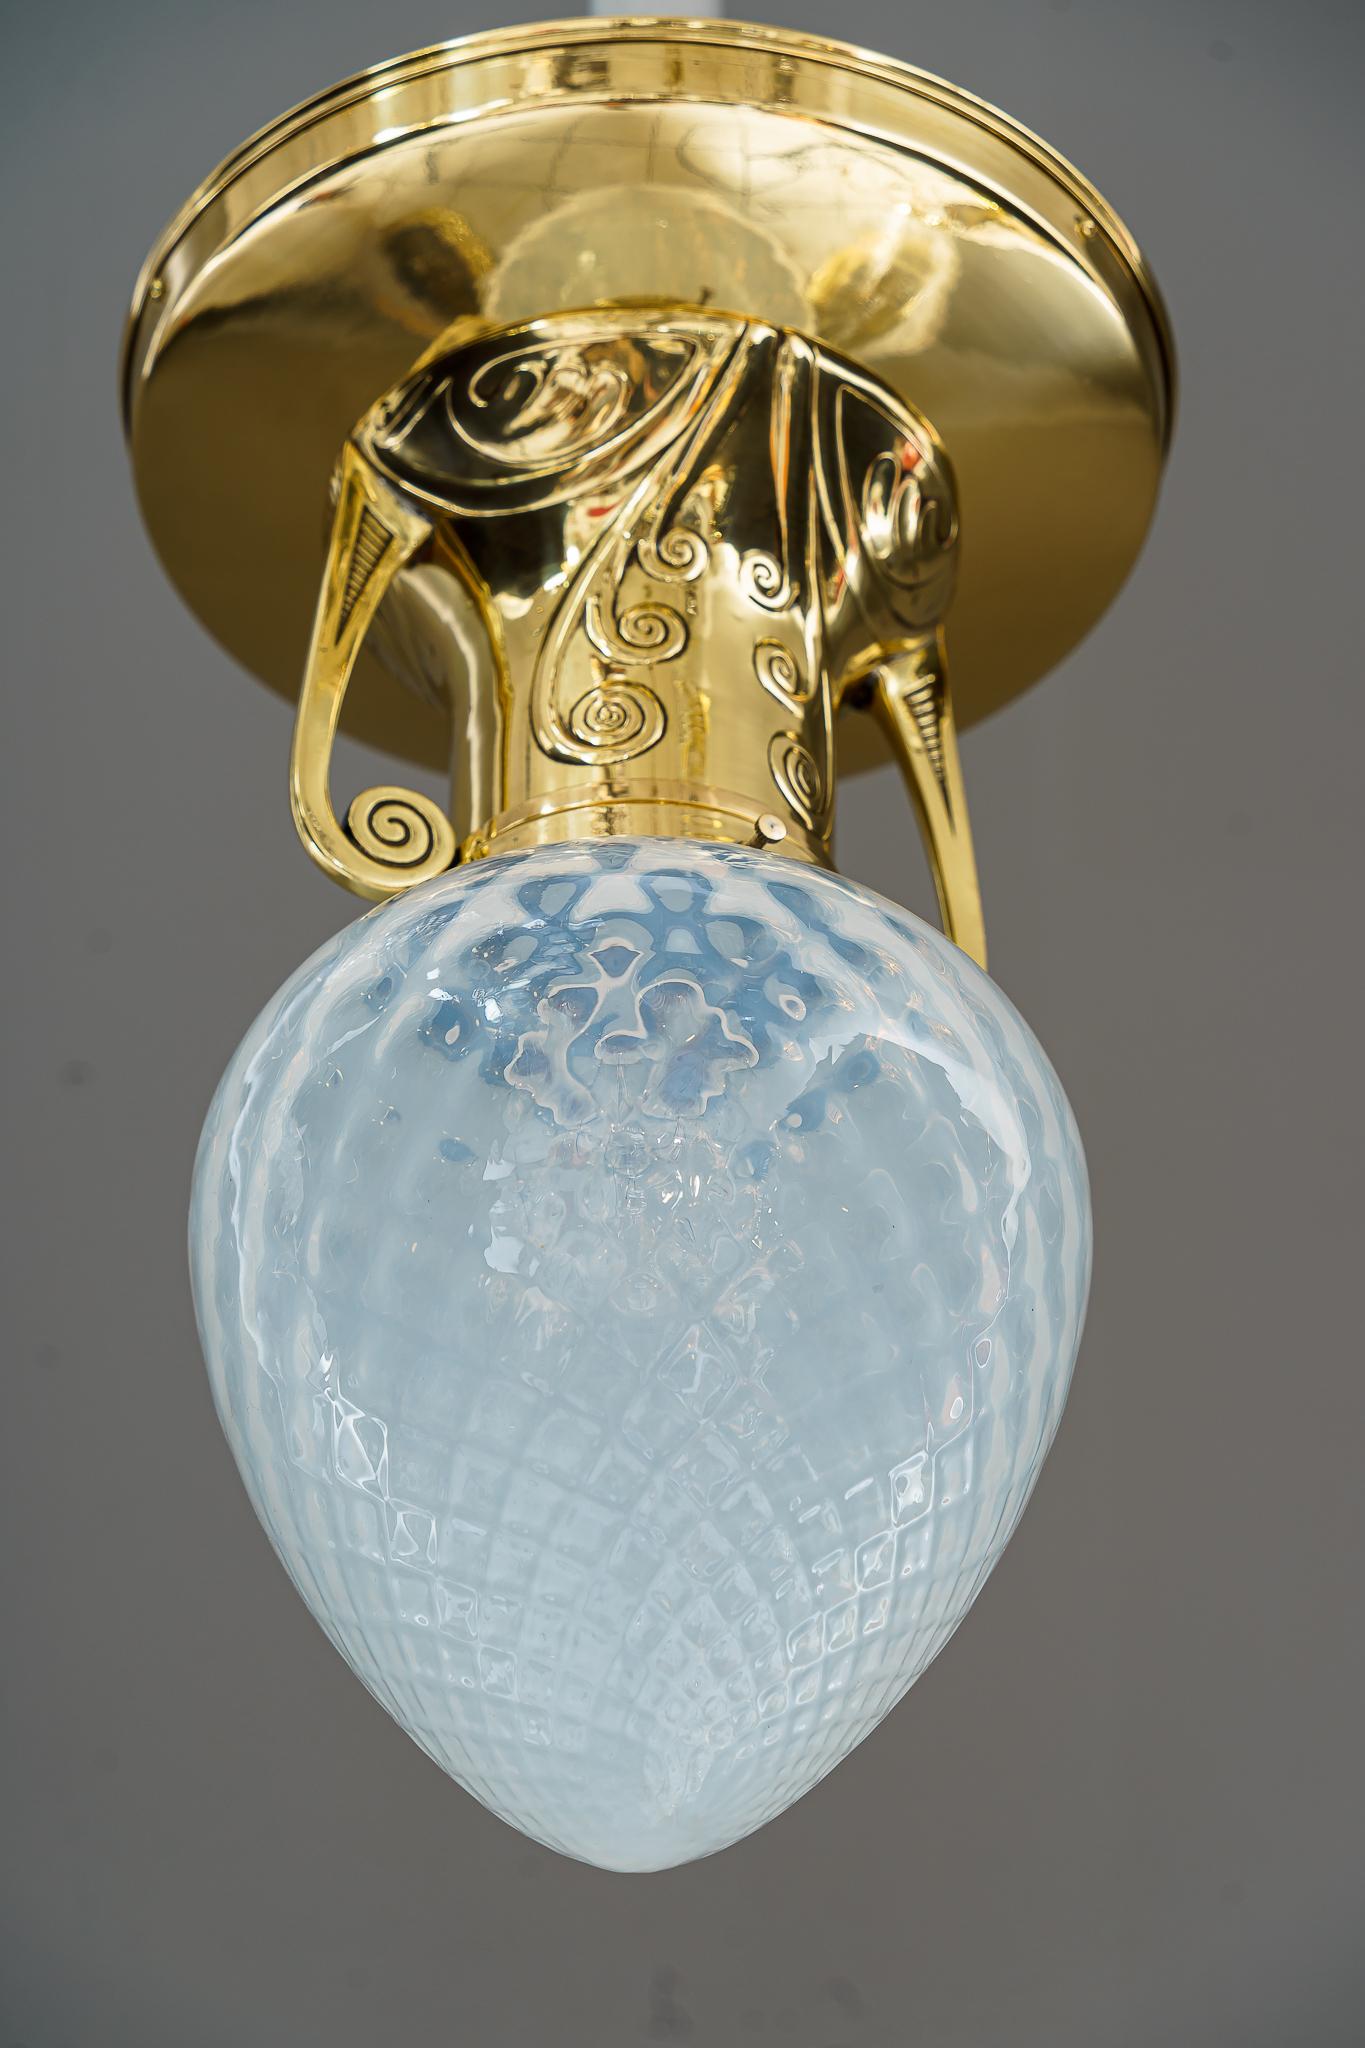 Art Deco Deckenlampe mit Opalglasschirm Wien um 1920
Poliert und emailliert
Originaler Opalglas-Schirm.